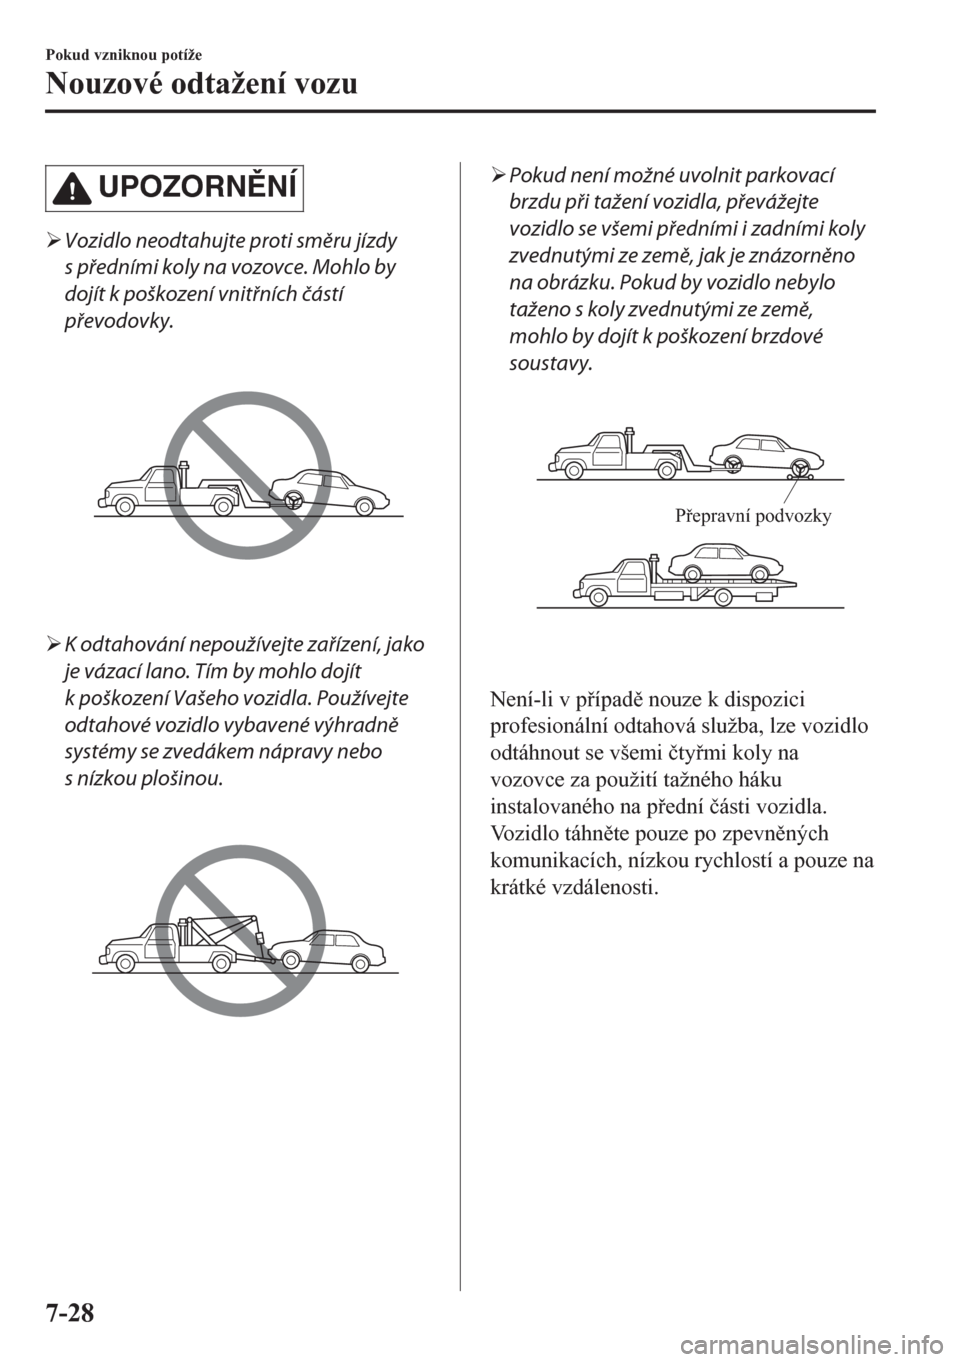 MAZDA MODEL CX-5 2018  Návod k obsluze (in Czech) UPOZORNNÍ
�¾Vozidlo neodtahujte proti směru jízdy
s předními koly na vozovce. Mohlo by
dojít k poškození vnitřních částí
převodovky.
�¾K odtahování nepoužívejte zařízení, jako